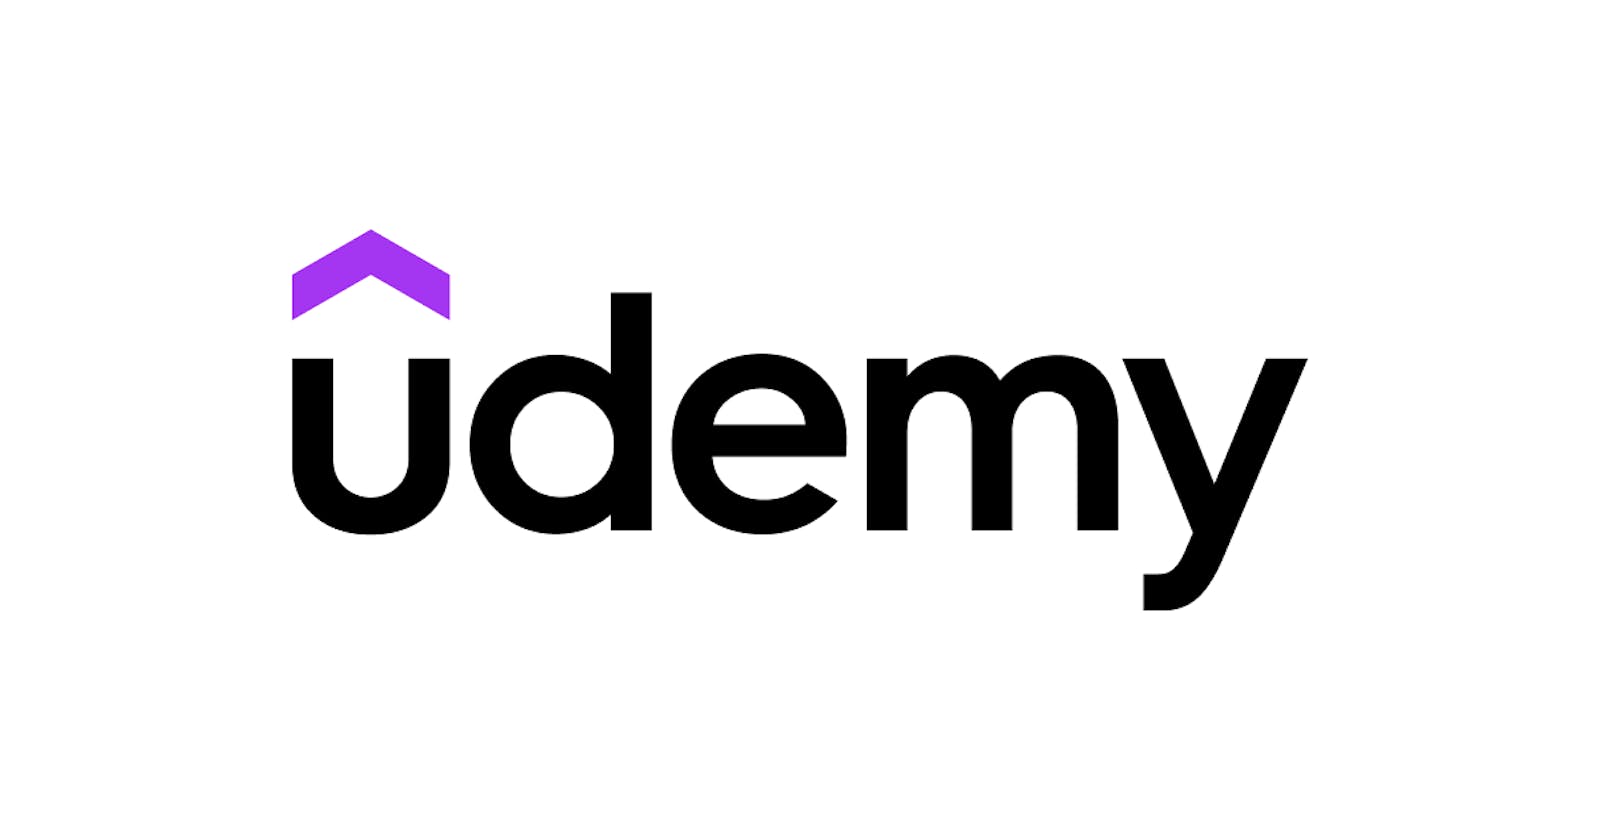 Make a clone of Udemy.com